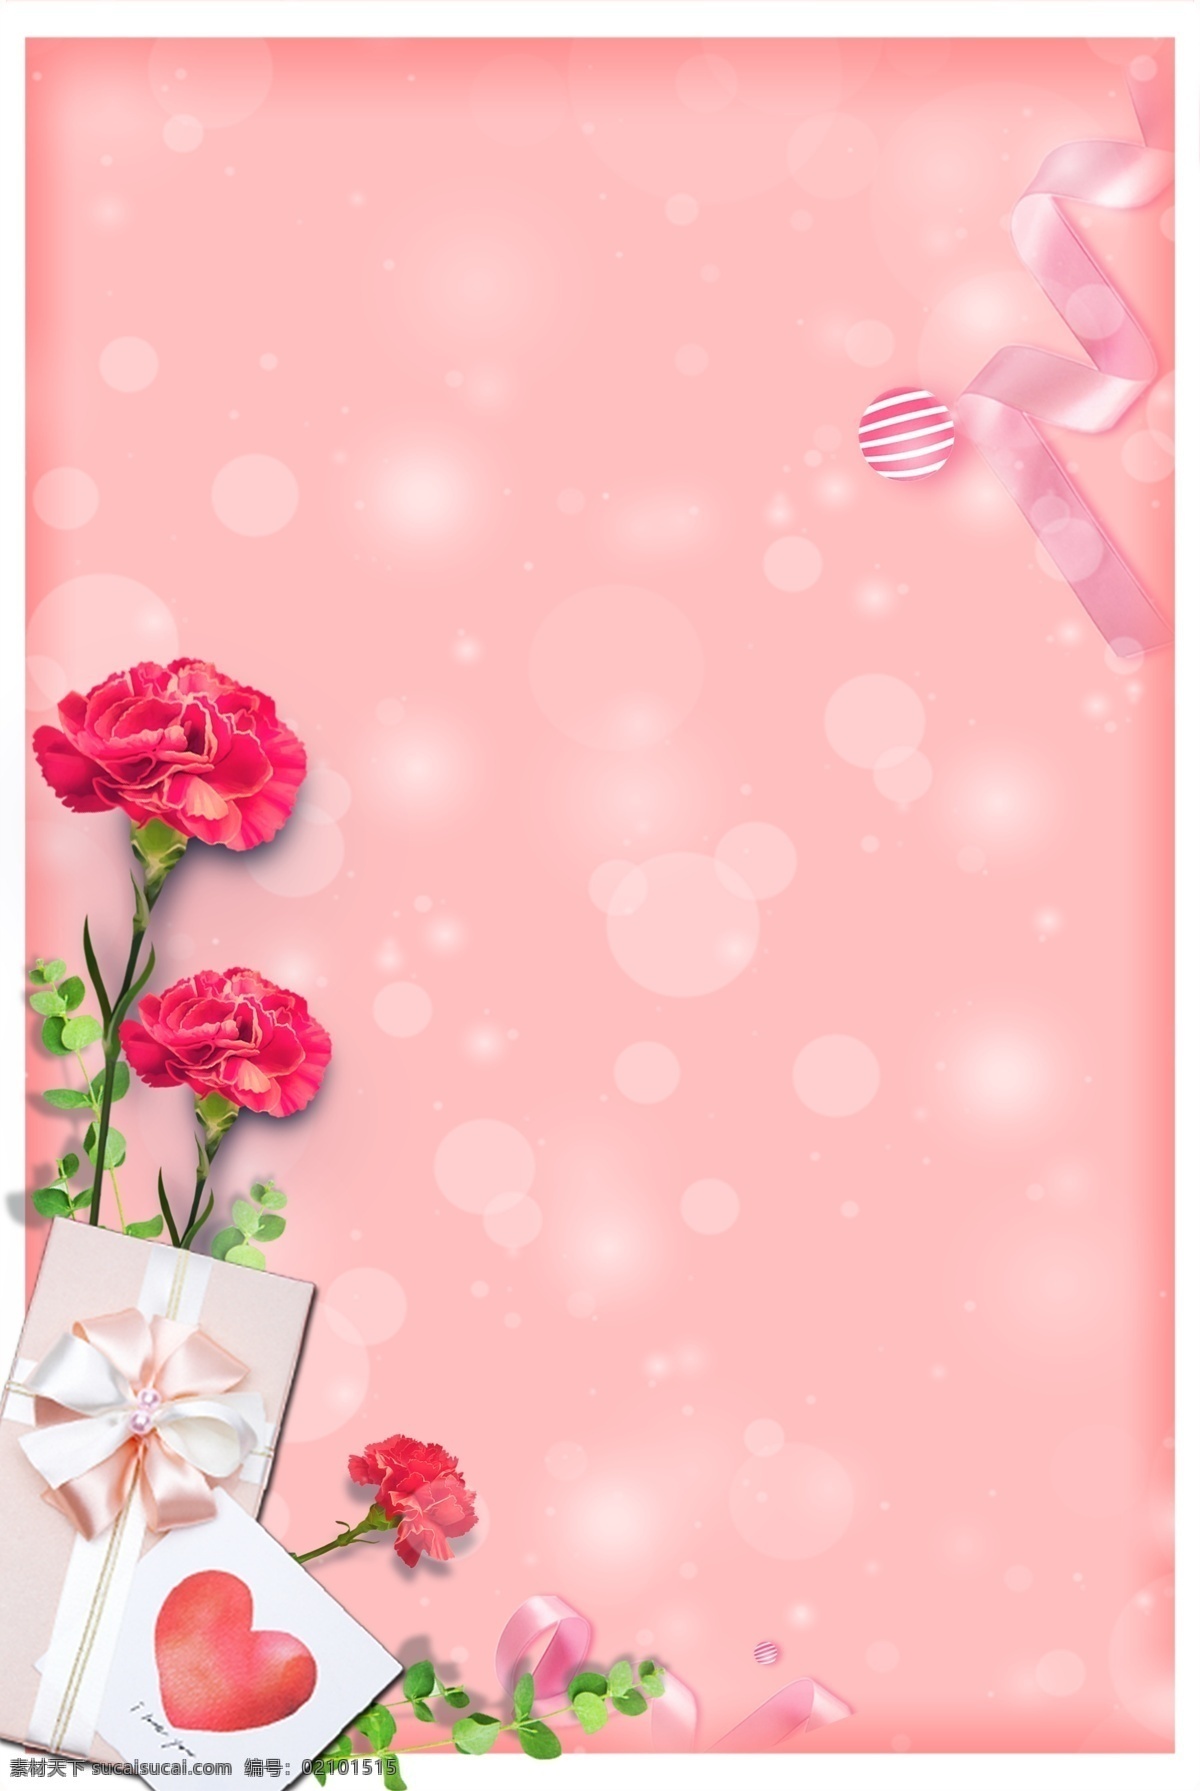 母亲节 红色 康乃馨 粉红 背景 红色康乃馨 卡片 礼品盒 丝带 光斑 温暖 温柔 边框 清新 可爱